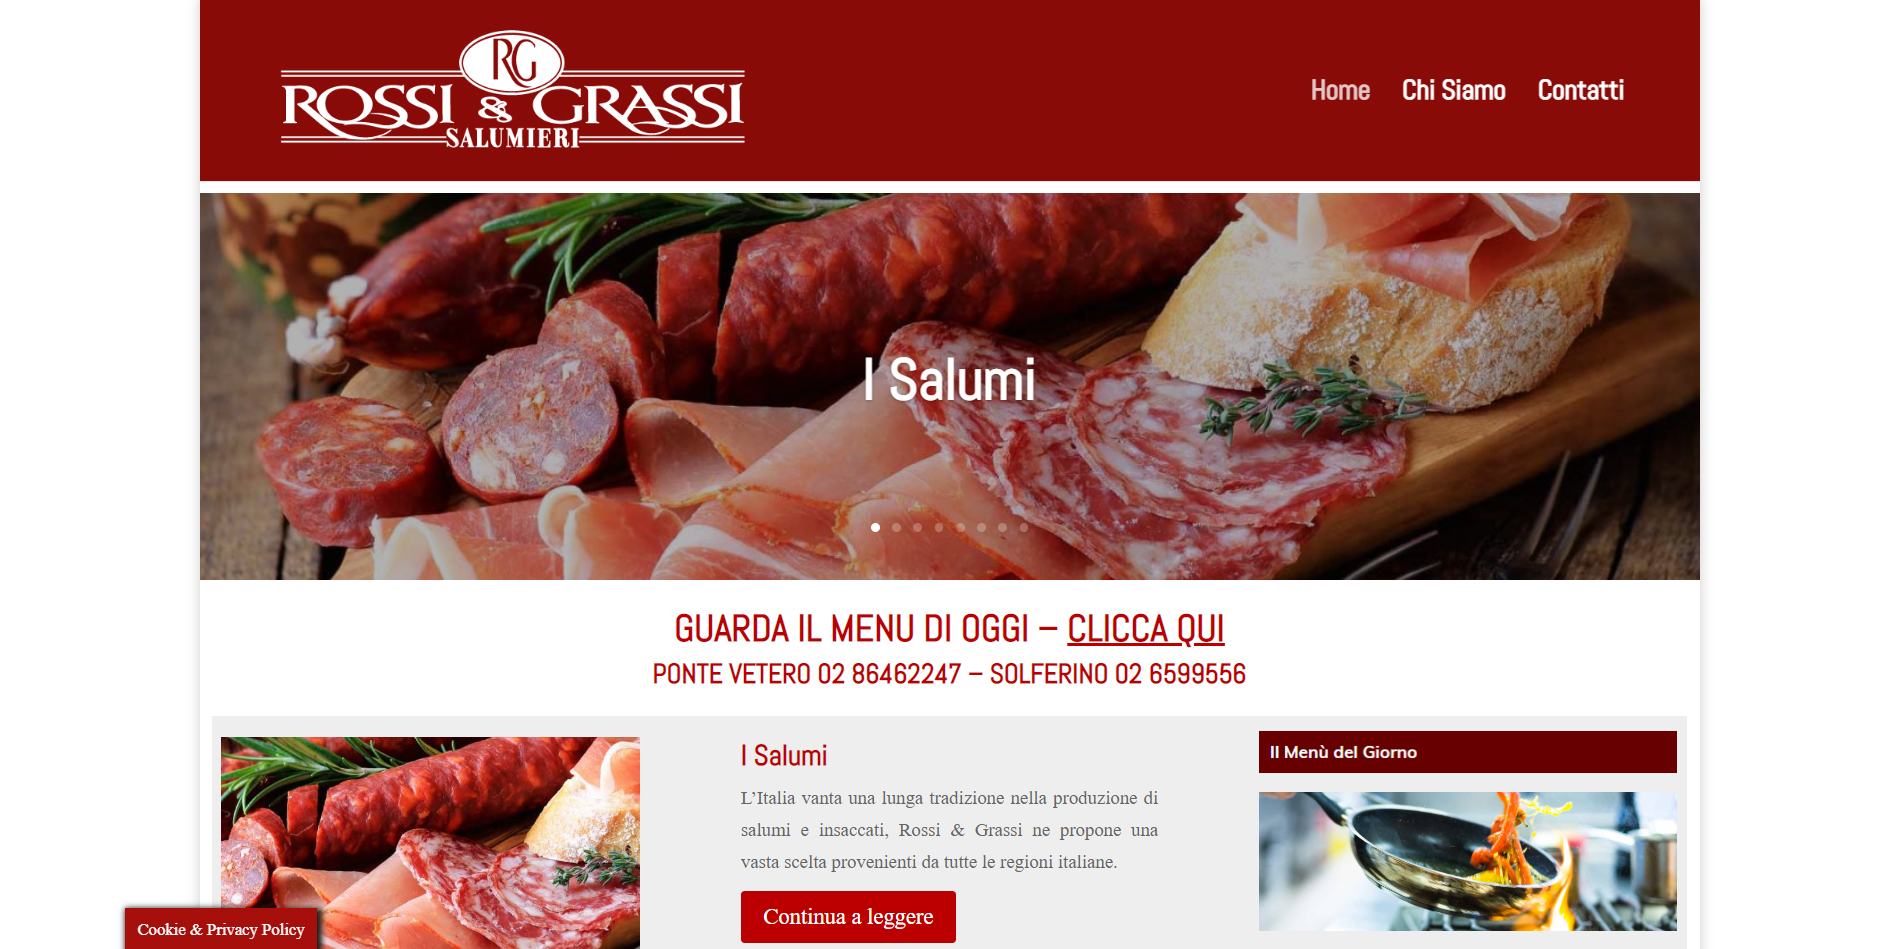 Realizzazione-Siti-Web-Posizionati_Salumeria-Gastronomia-Brera_www.italyengine.it